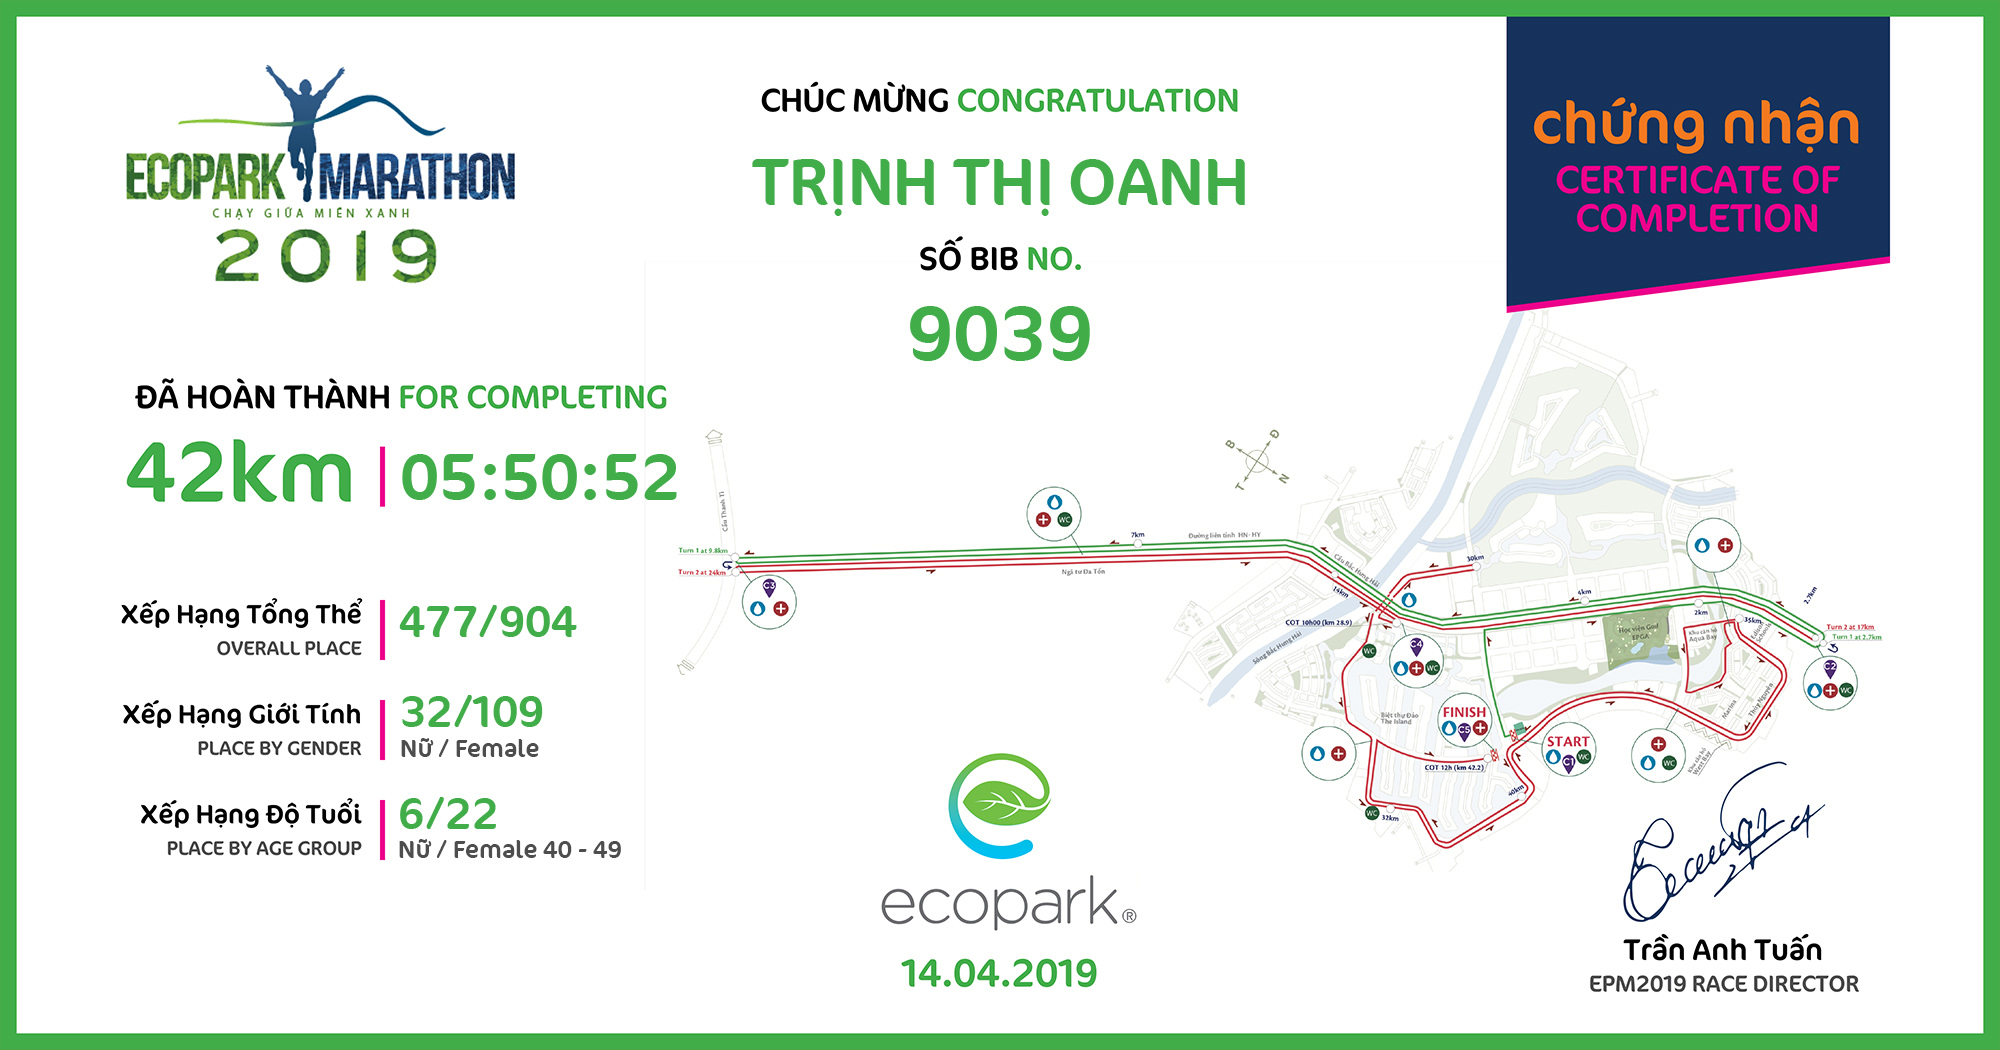 9039 - Trịnh Thị Oanh